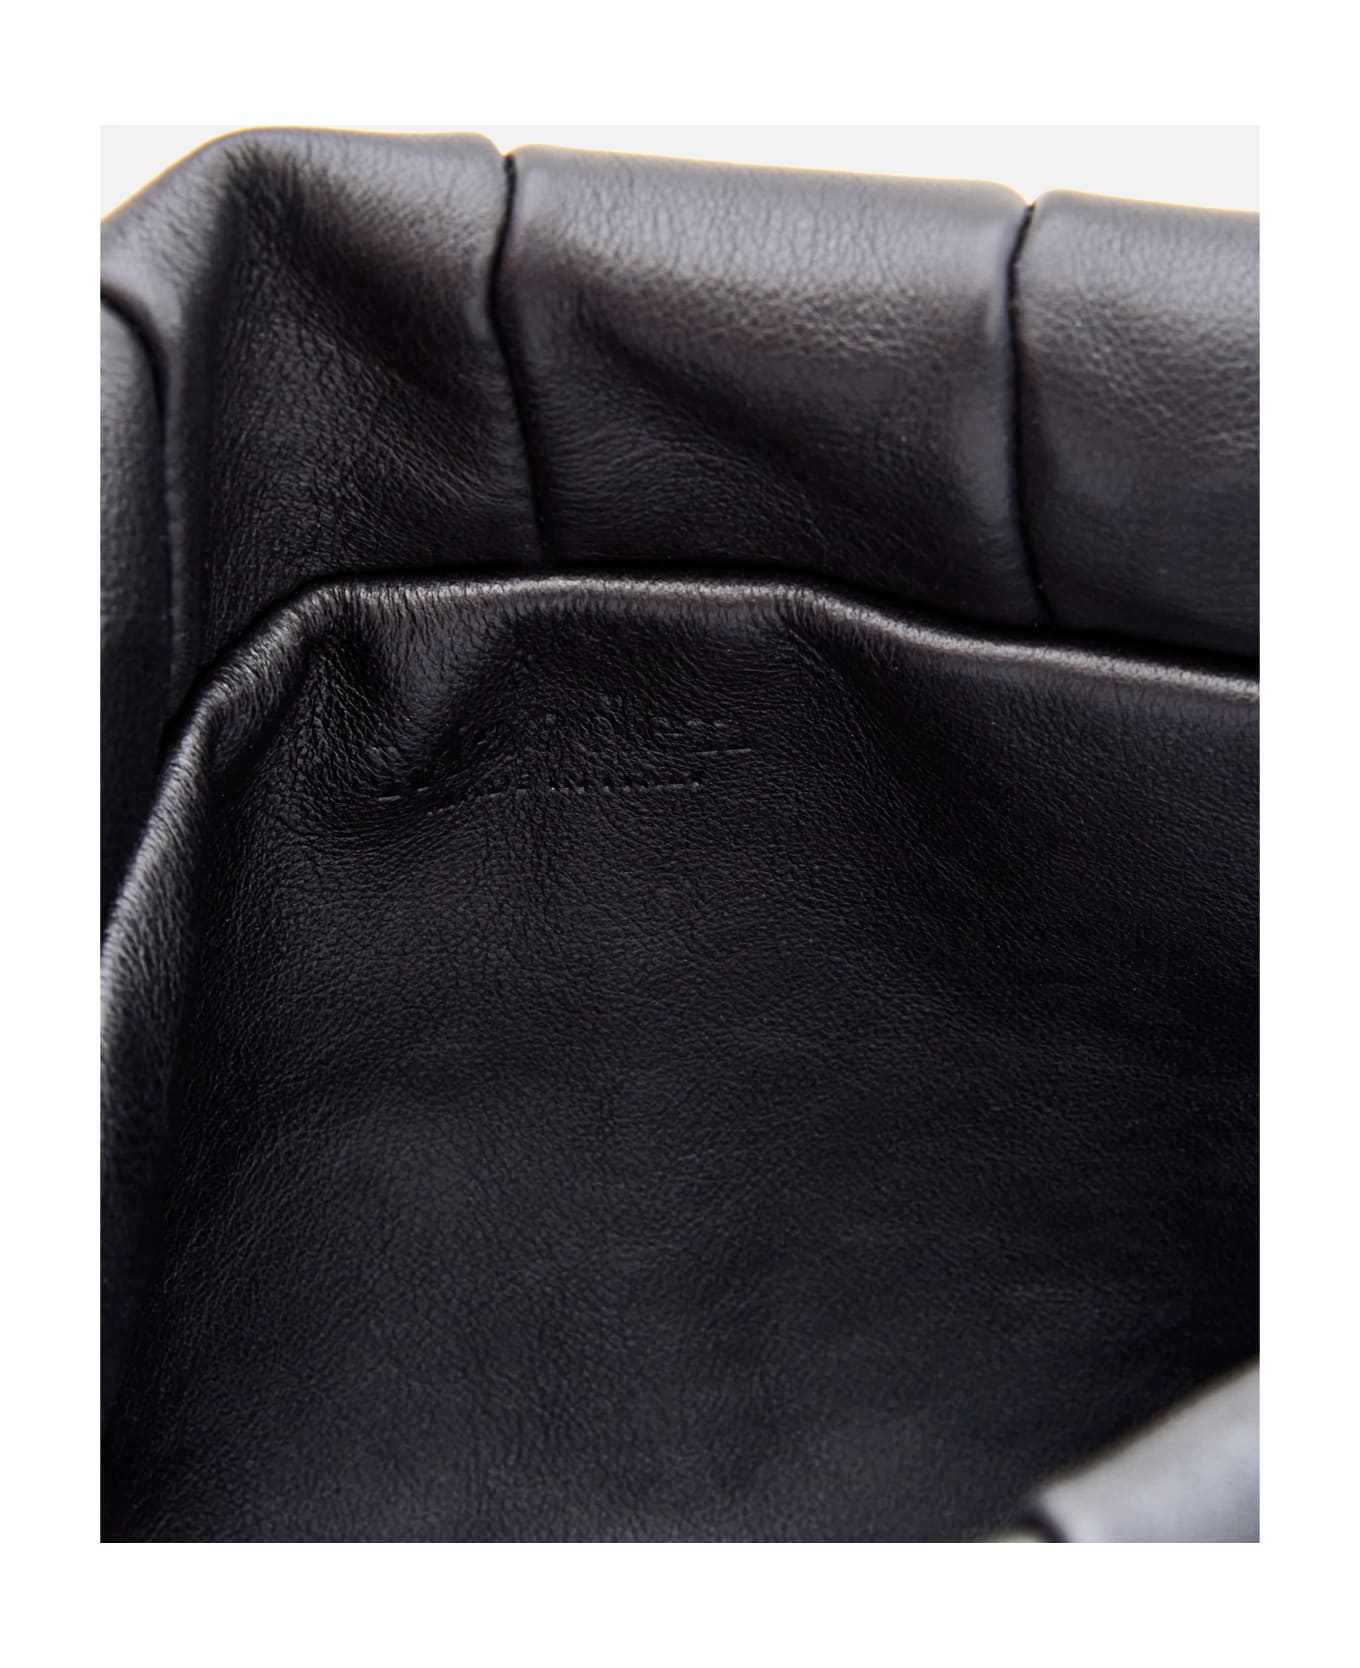 Maeden Boulevard Leather Shoulder Bag - Black